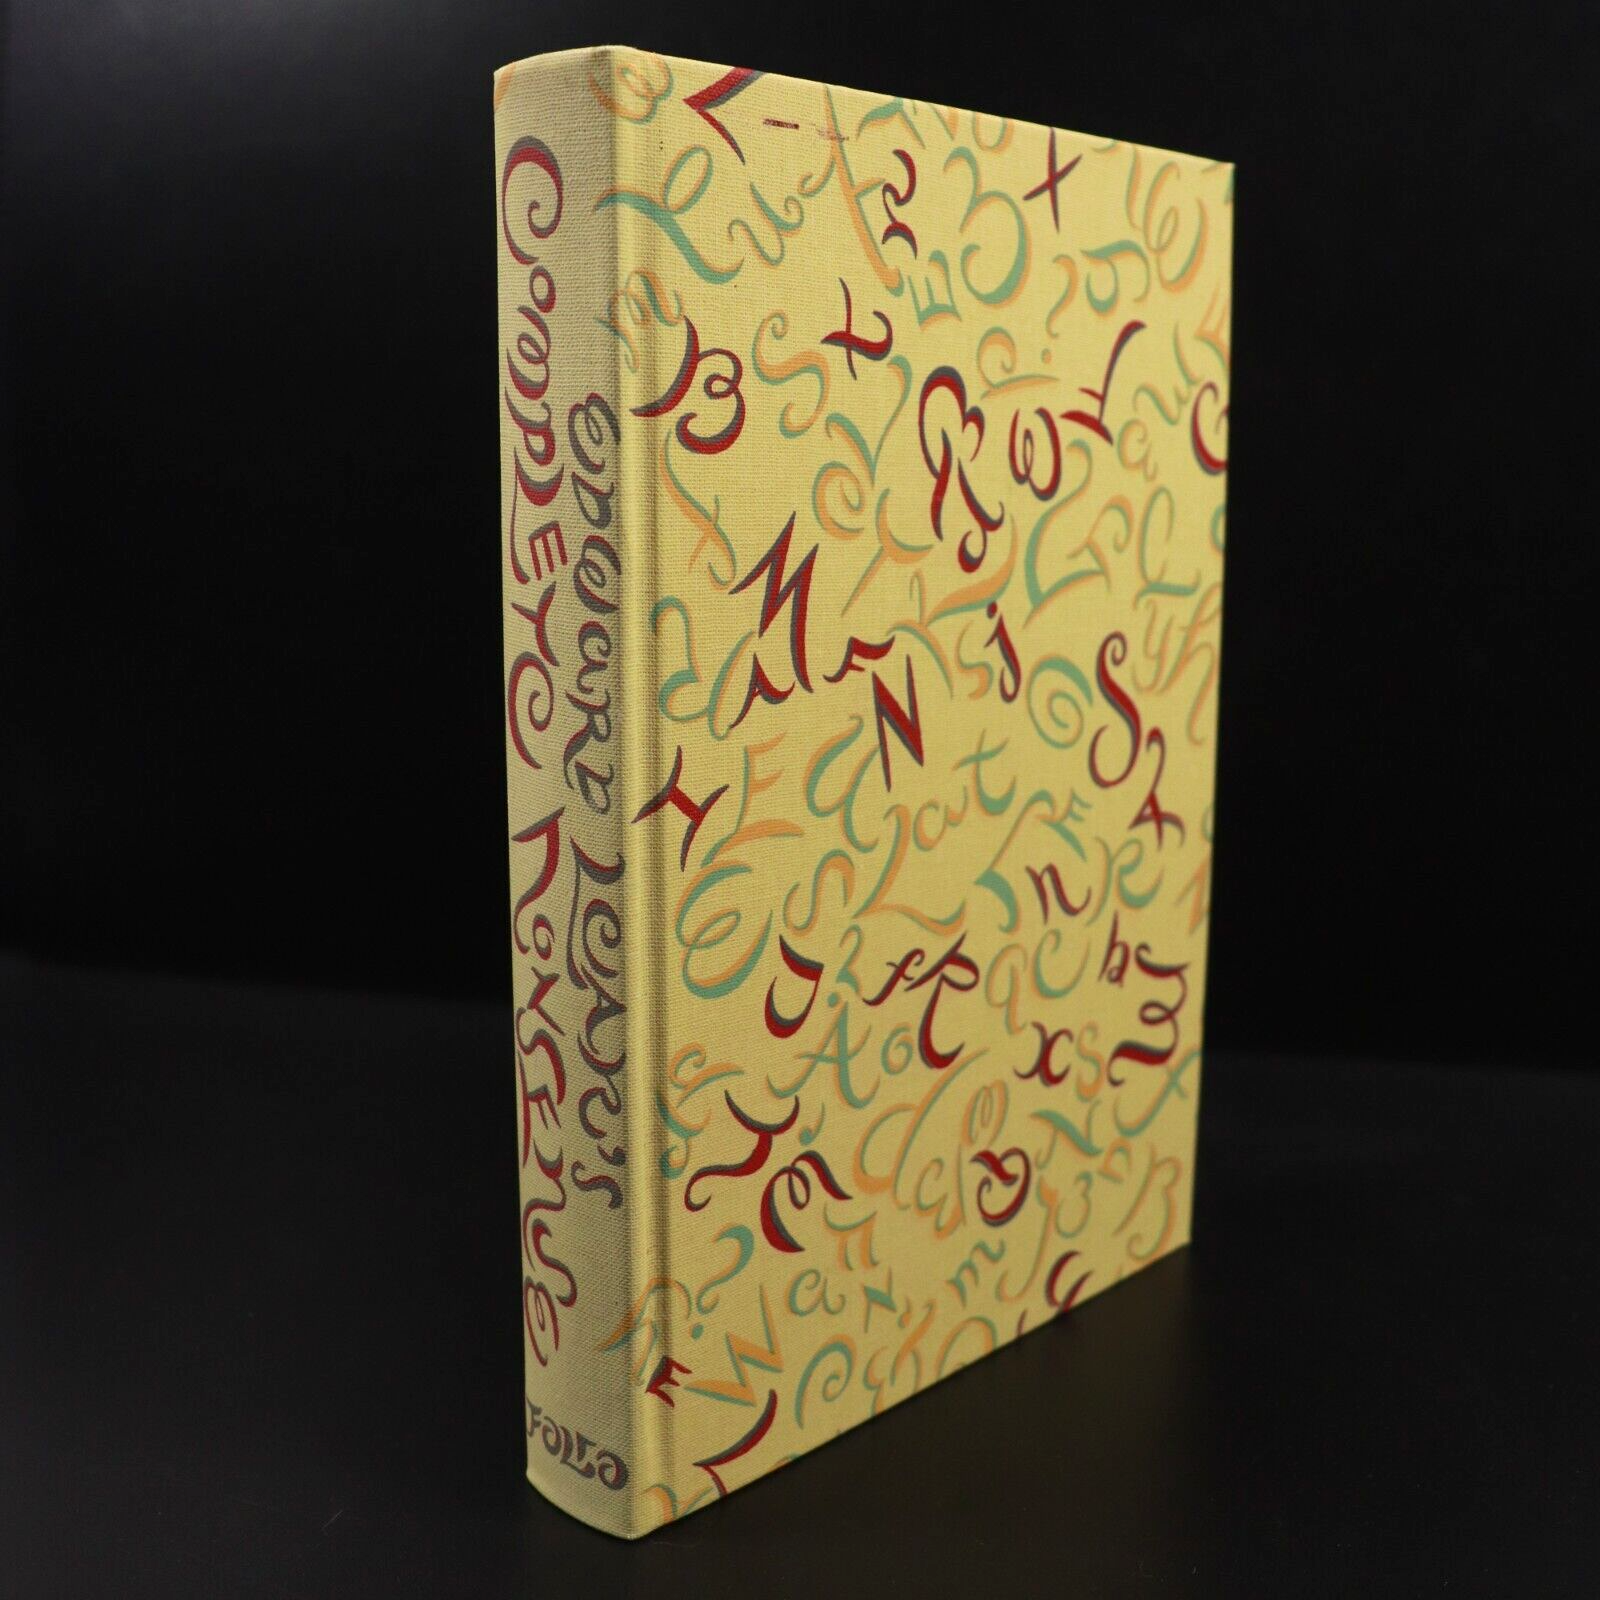 1998 Edward Lear's Complete Book Of Nonsense Folio Society Literature Book